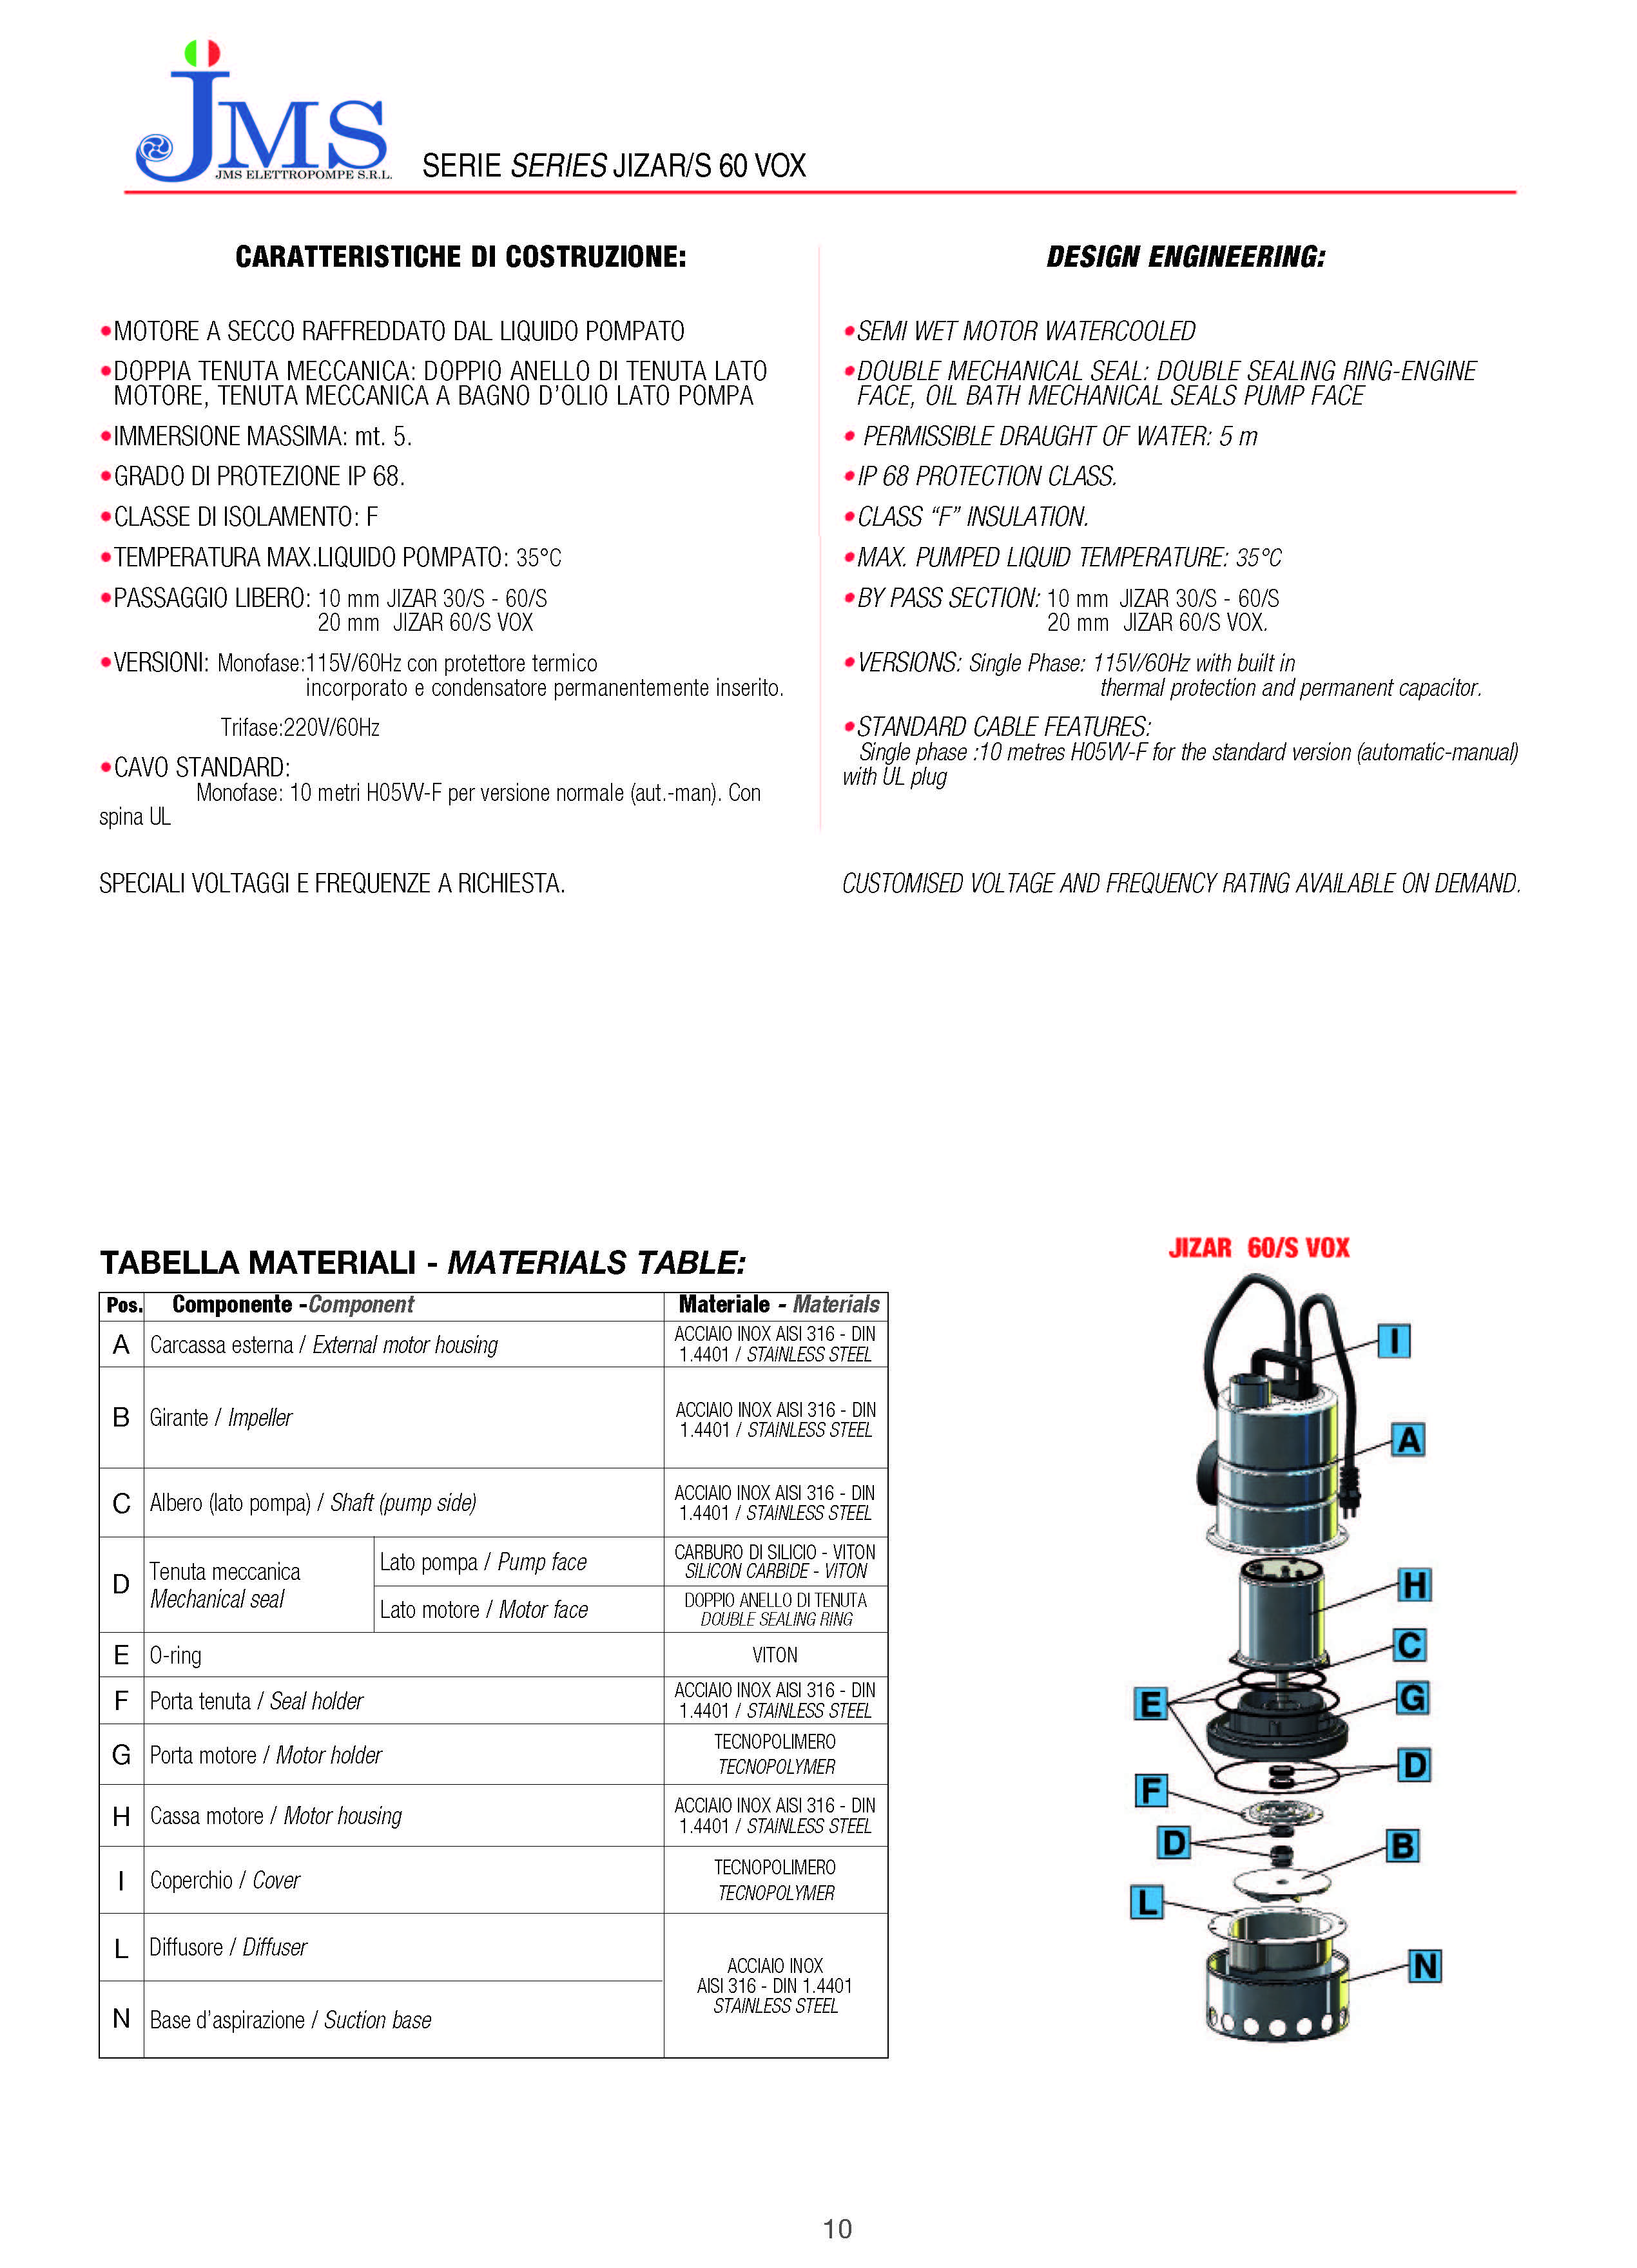 JIZAR-VOX 60/SS316 Auto Sump Pump - 1Ph - 2400 GPH - 0.6 HP - 1 1/4"- Drainage Submersible Pump